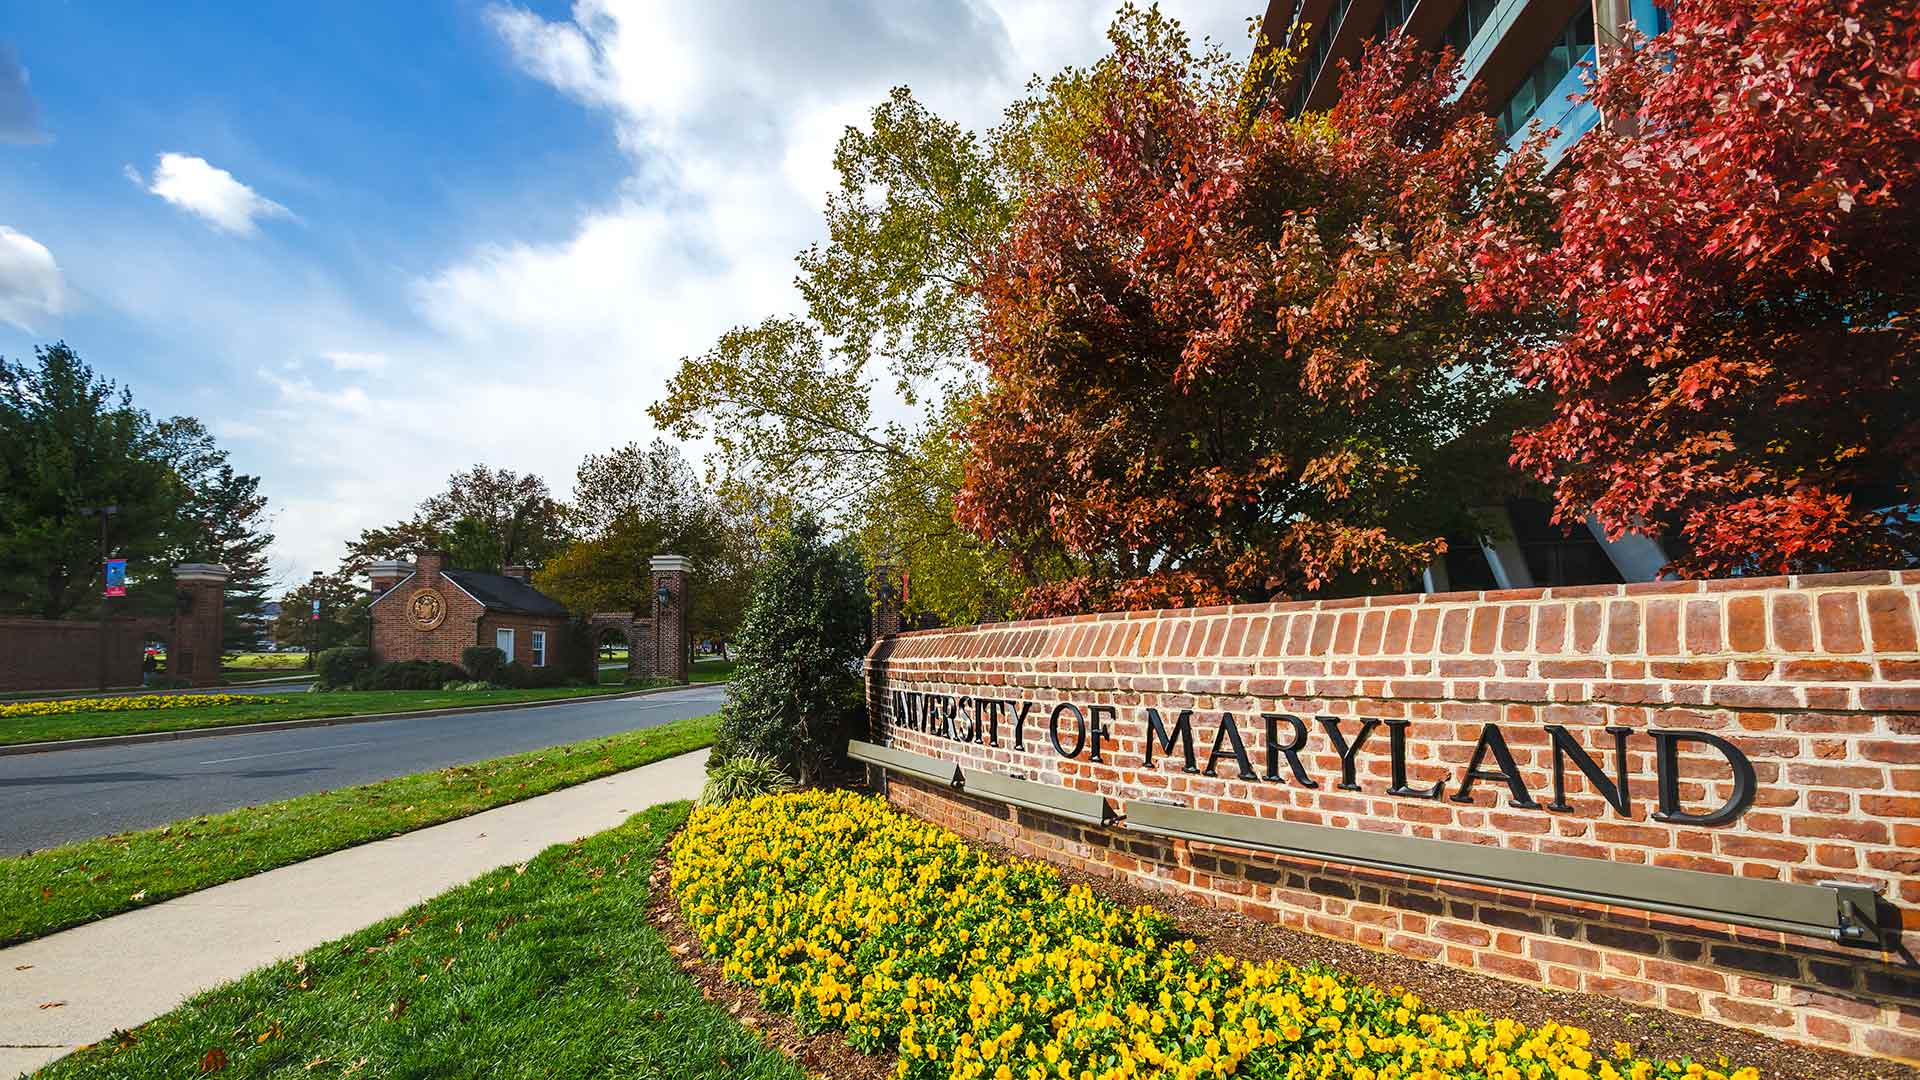 University of Maryland Sign